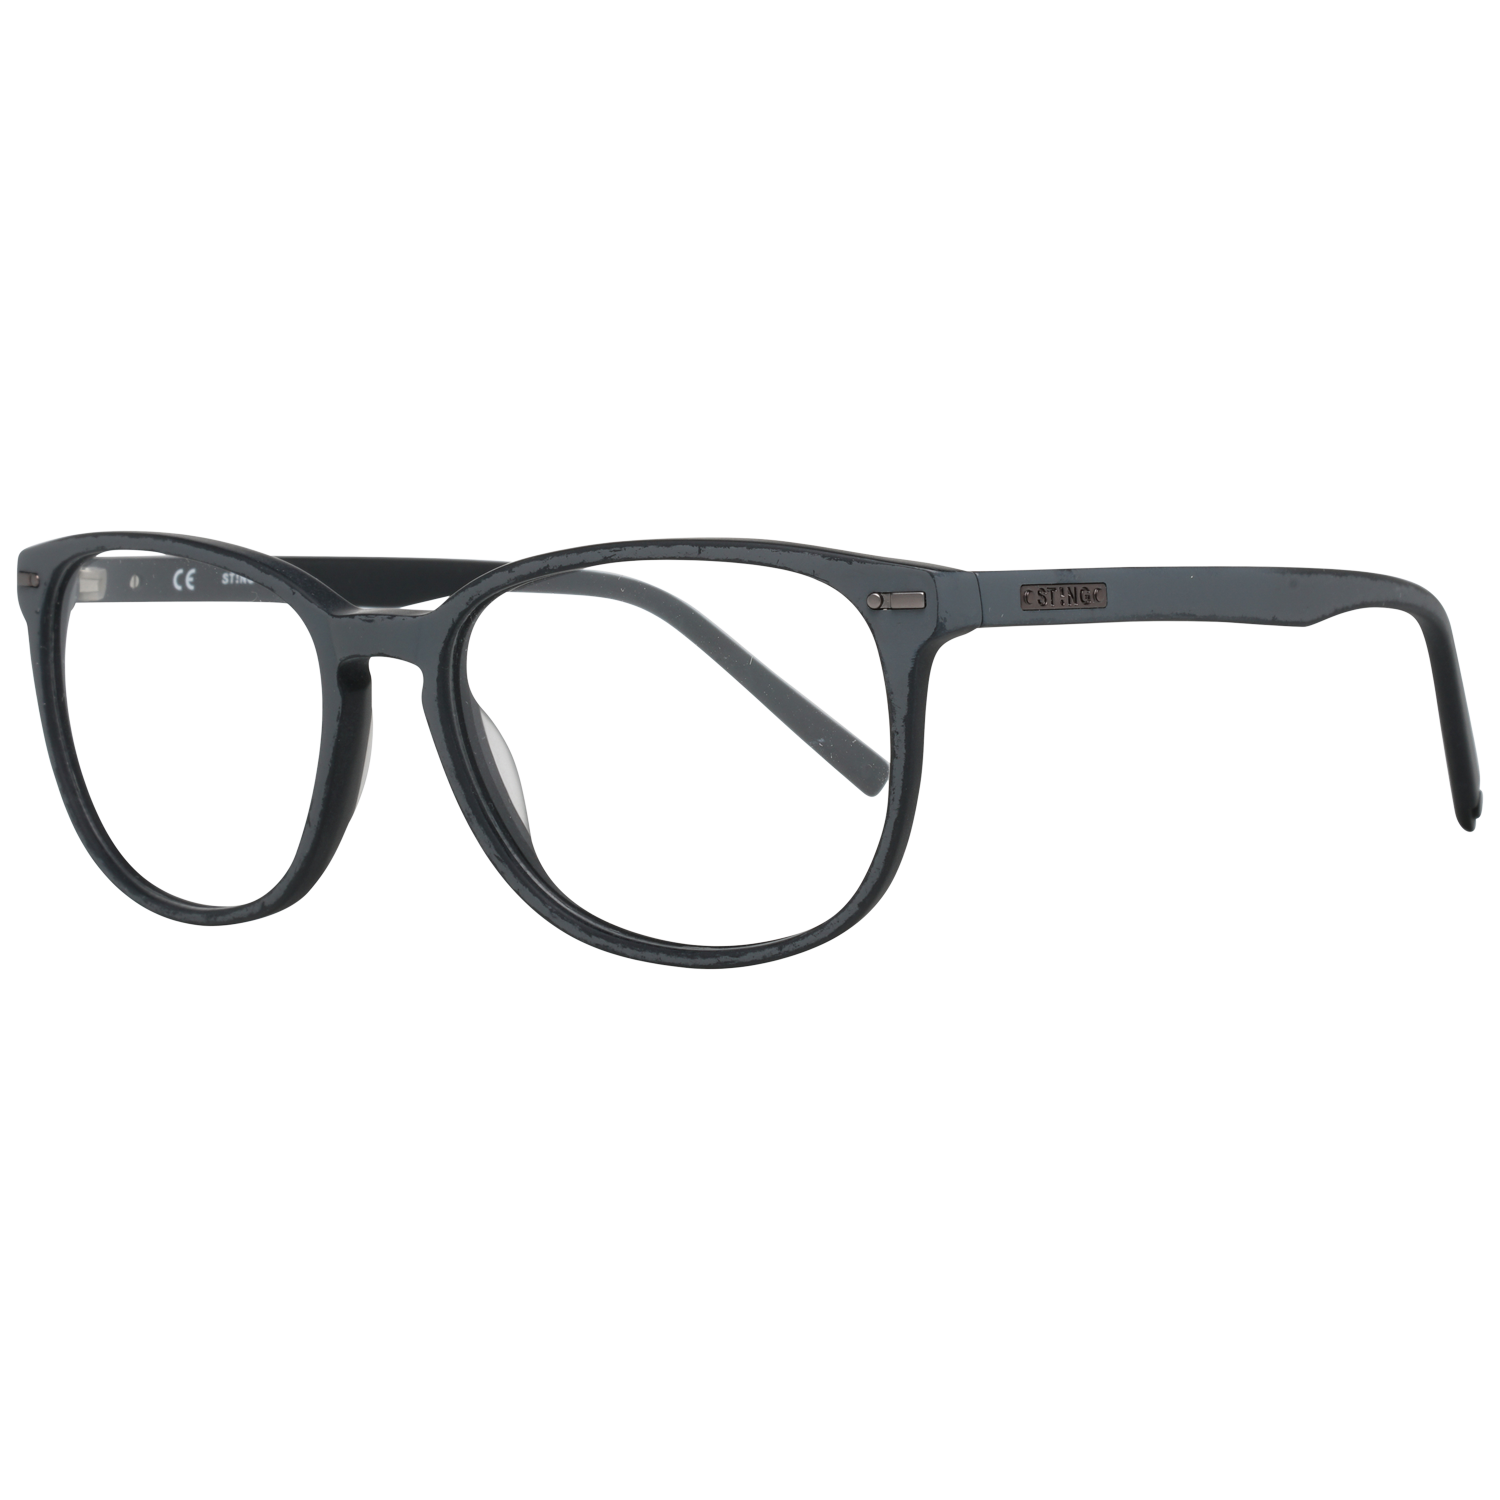 Sting Frames Sting Optical Frame VST040 1EPM 53 Eyeglasses Eyewear UK USA Australia 